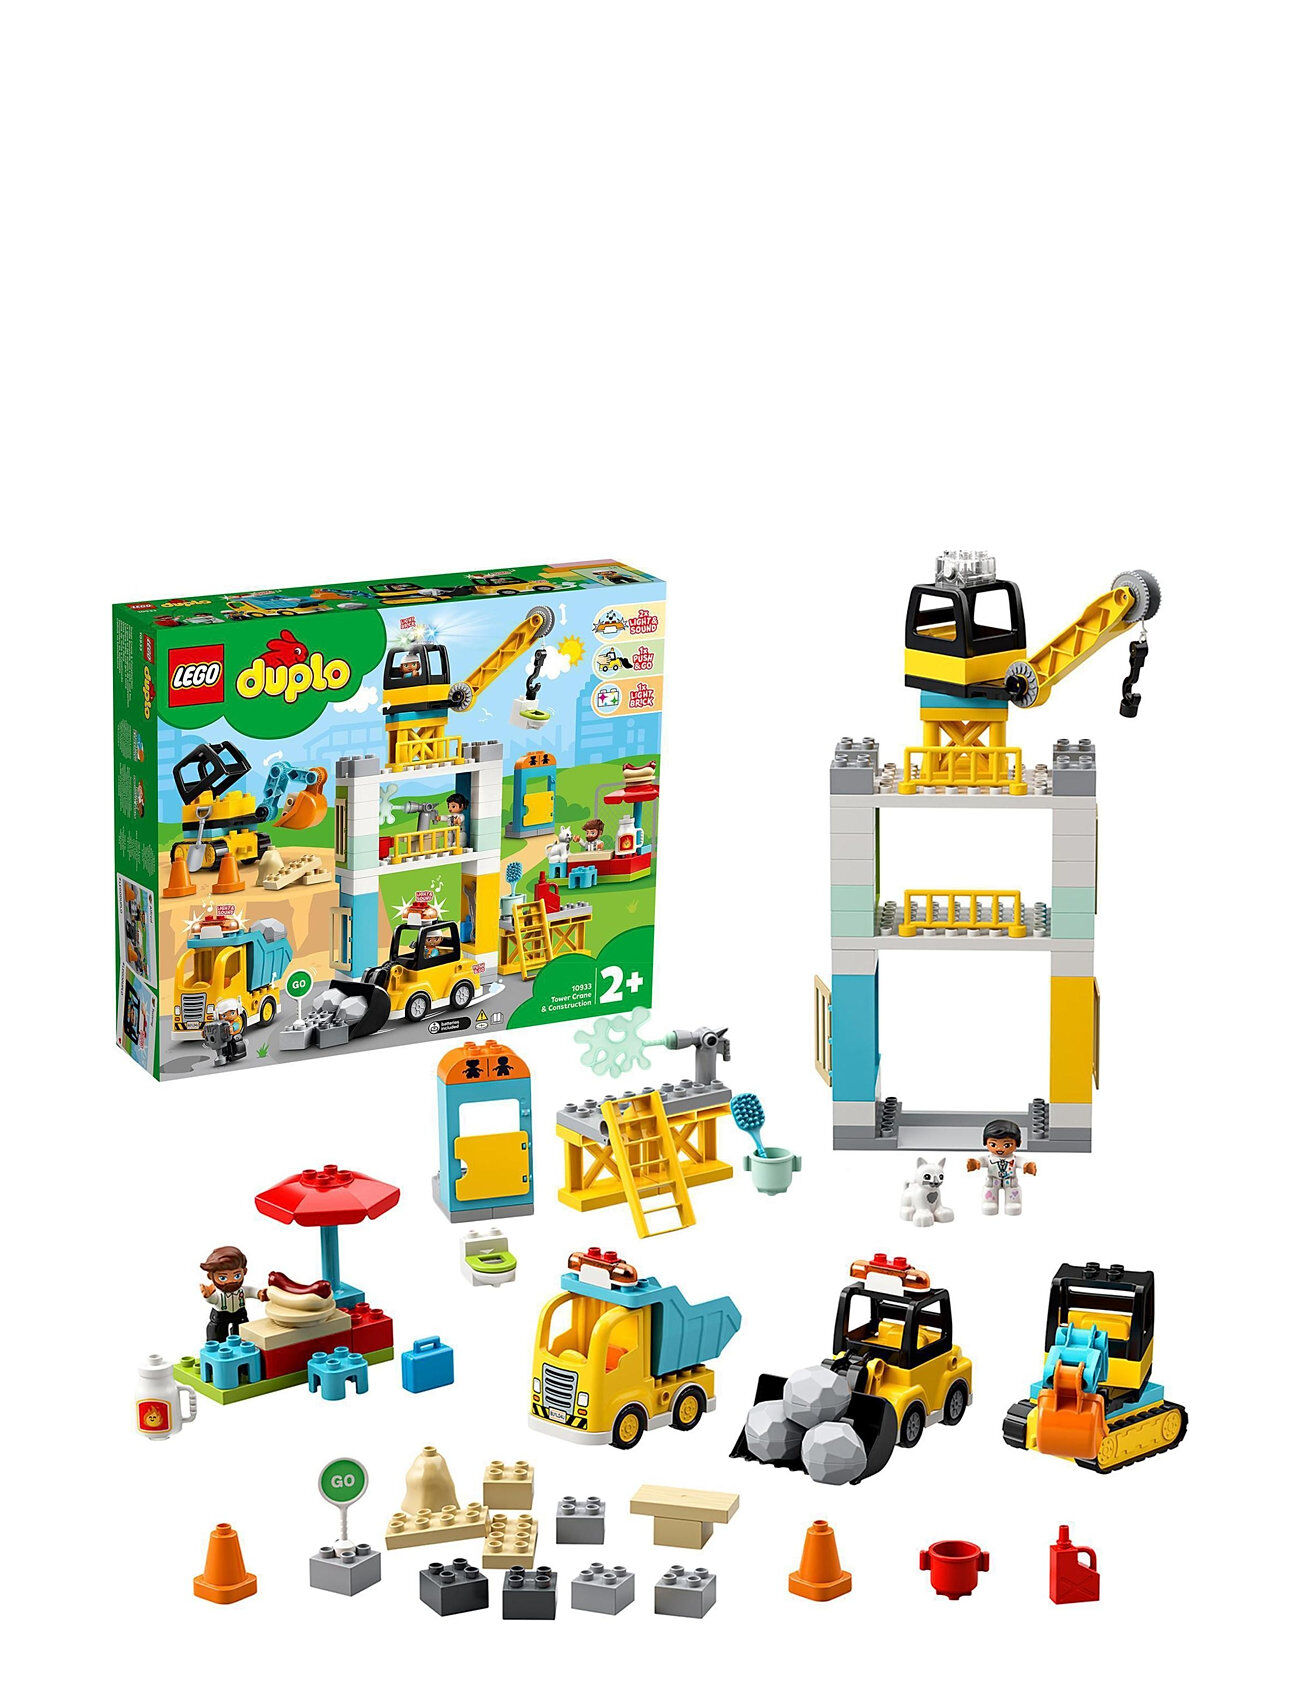 Lego Tower Crane & Construction Vehicle Toys Toys LEGO Toys LEGO DUPLO Multi/mønstret LEGO